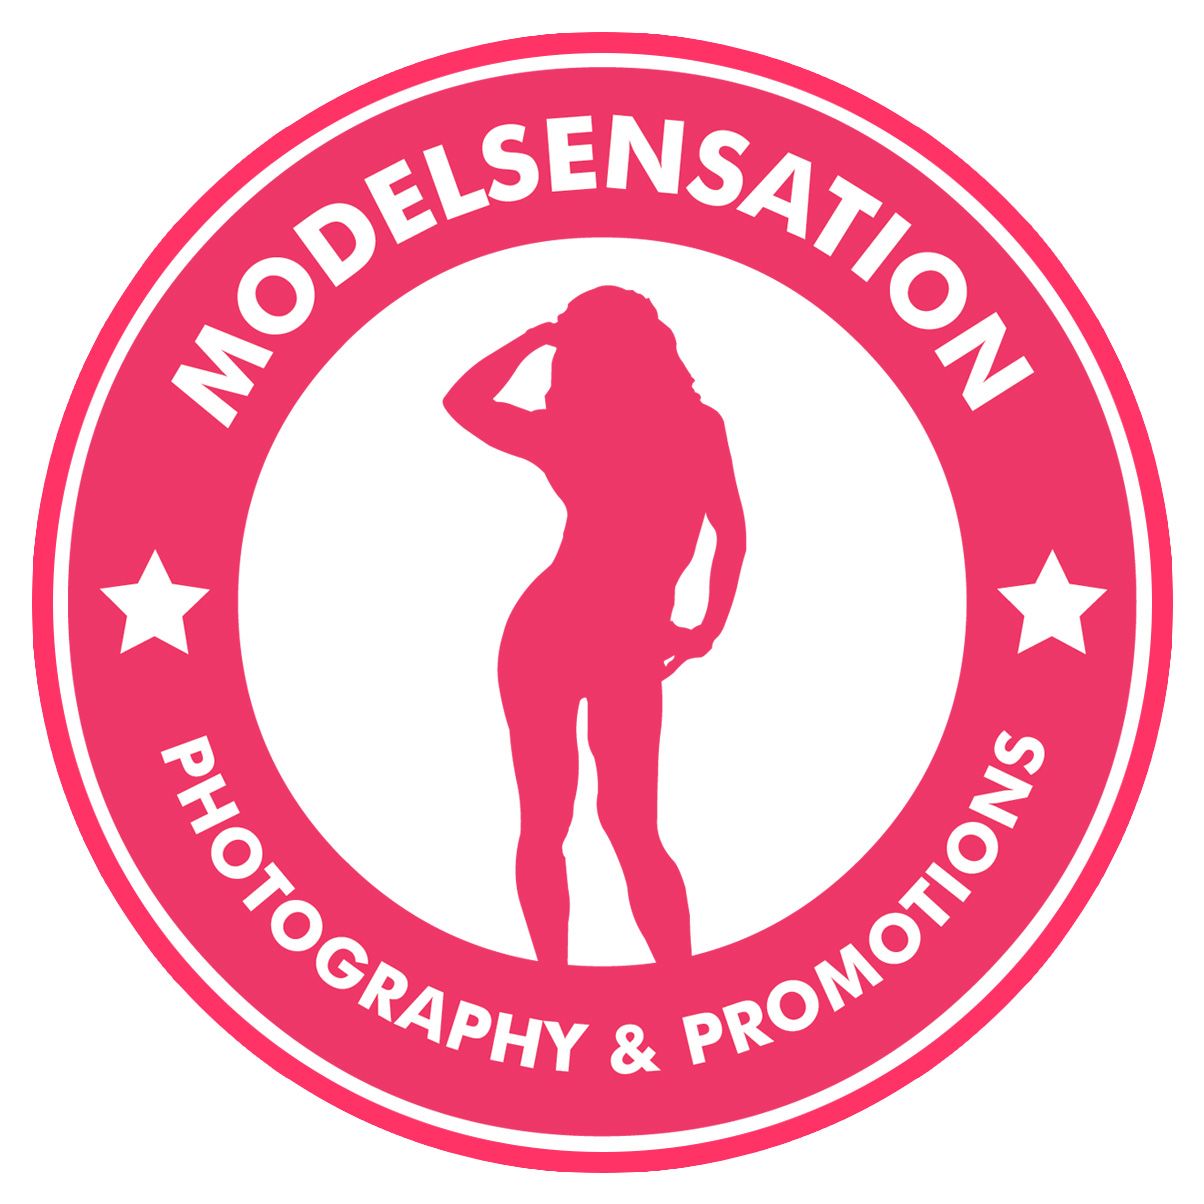 ModelSensation Photography